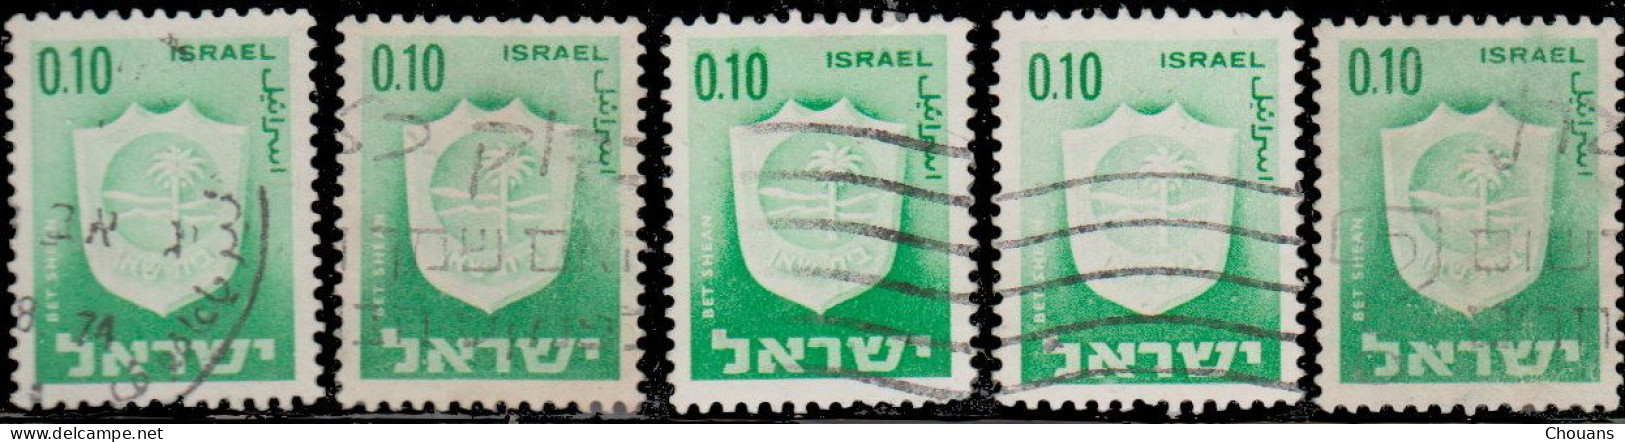 Israël 1965. ~ YT 276 (par 5)  - Armoiries. Bet Shean - Usados (sin Tab)